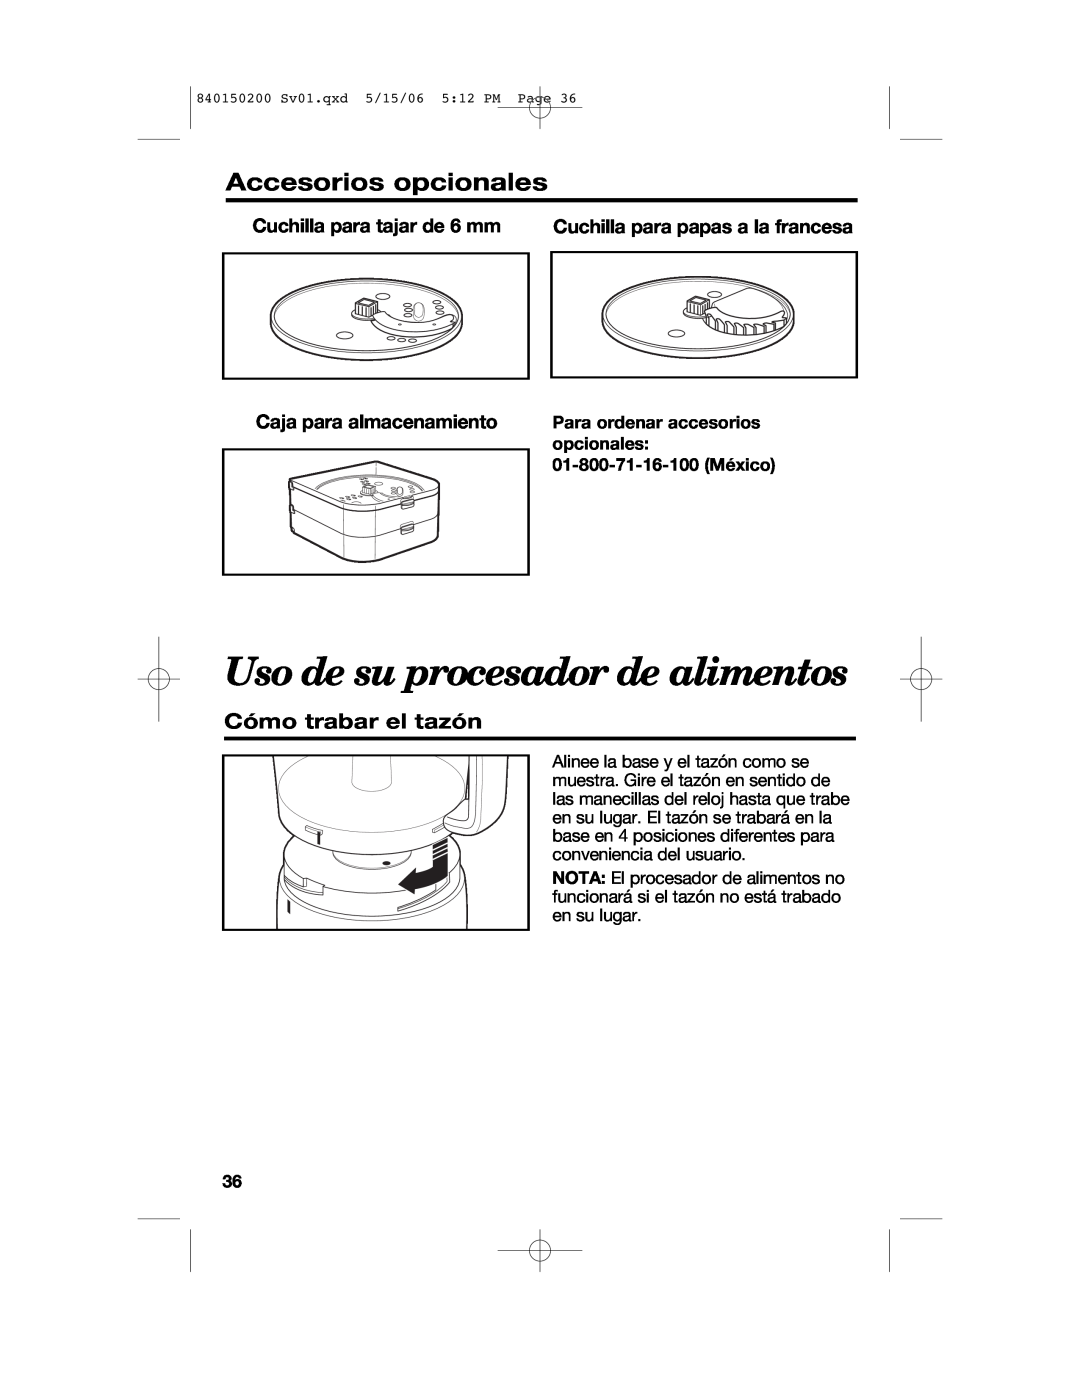 Proctor-Silex 840150200 manual Uso de su procesador de alimentos, Accesorios opcionales, Cómo trabar el tazón 